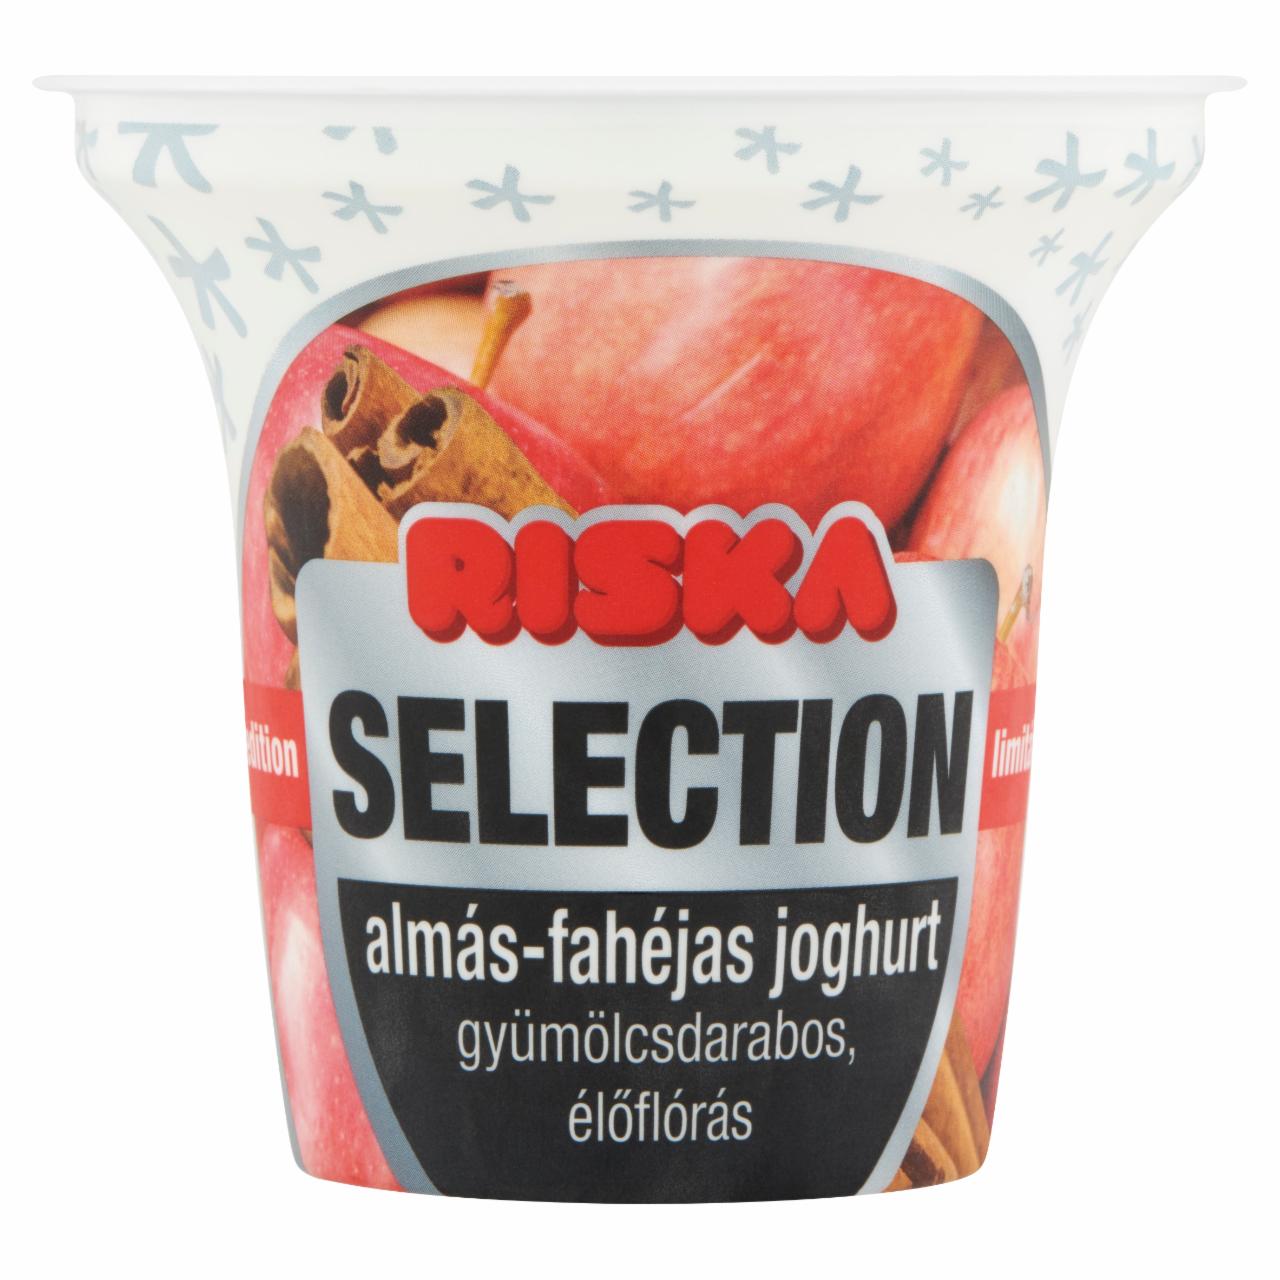 Képek - Riska Selection élőflórás, almás-fahéjas, gyümölcsdarabos joghurt 200 g